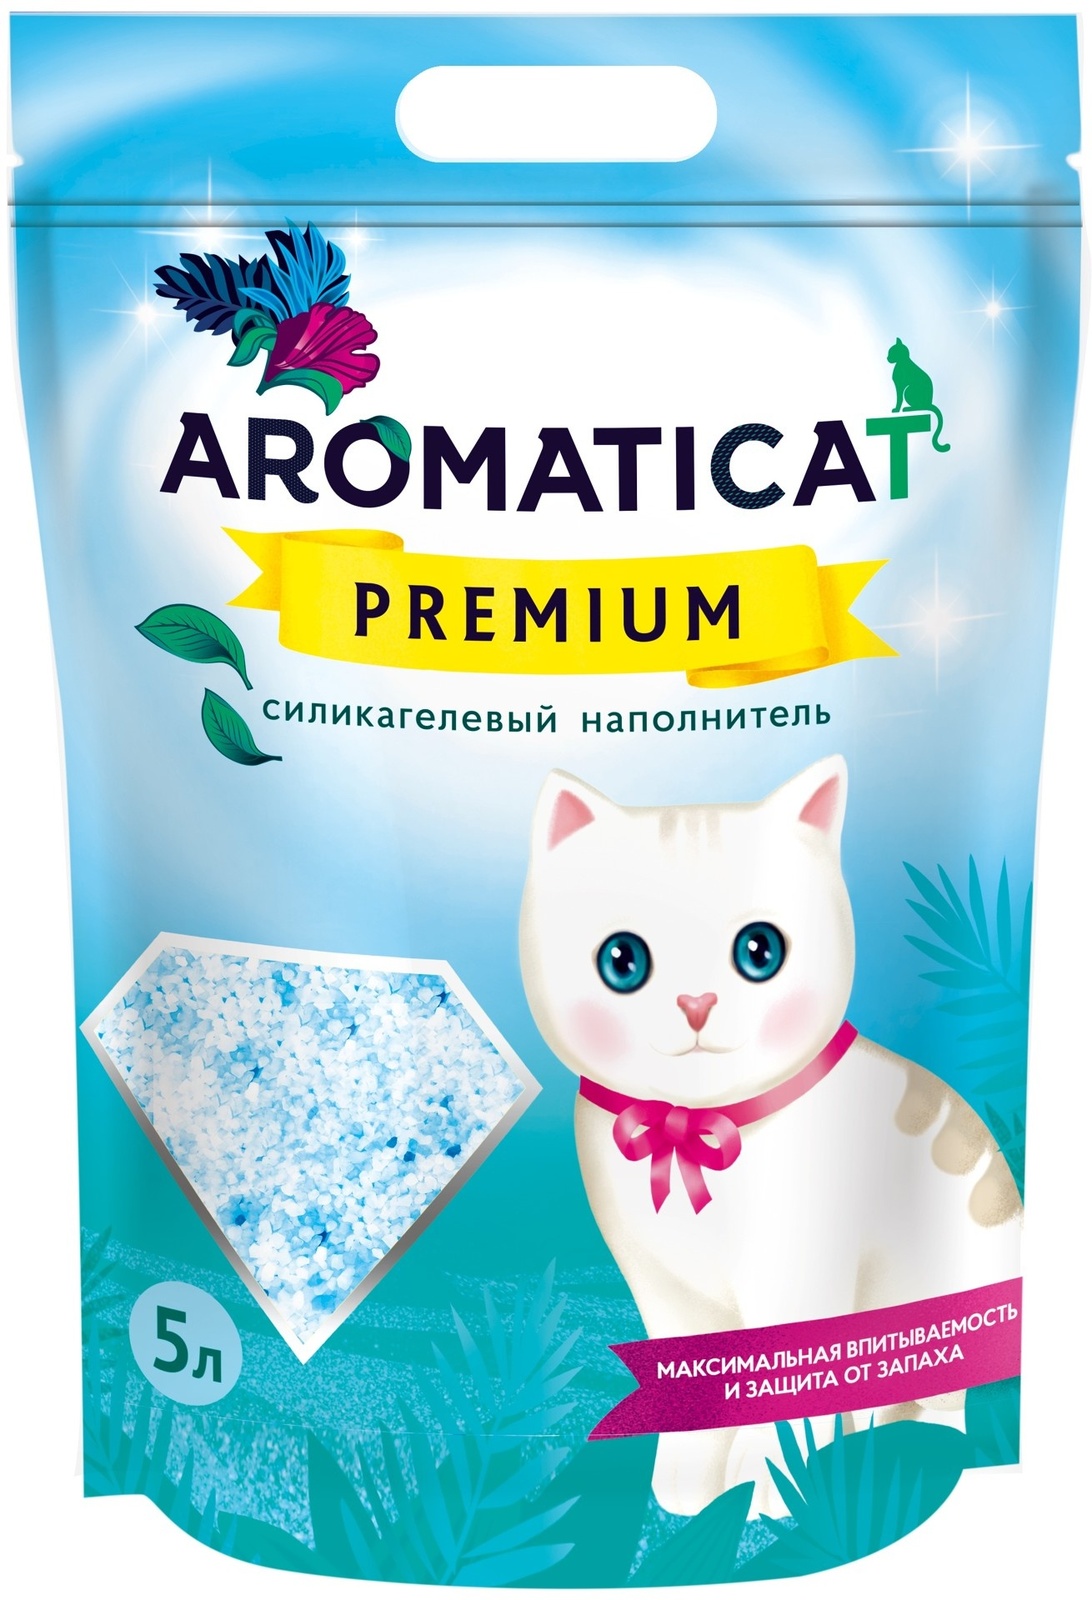 Силикагелевый наполнитель Premium (4 кг) AromatiCat